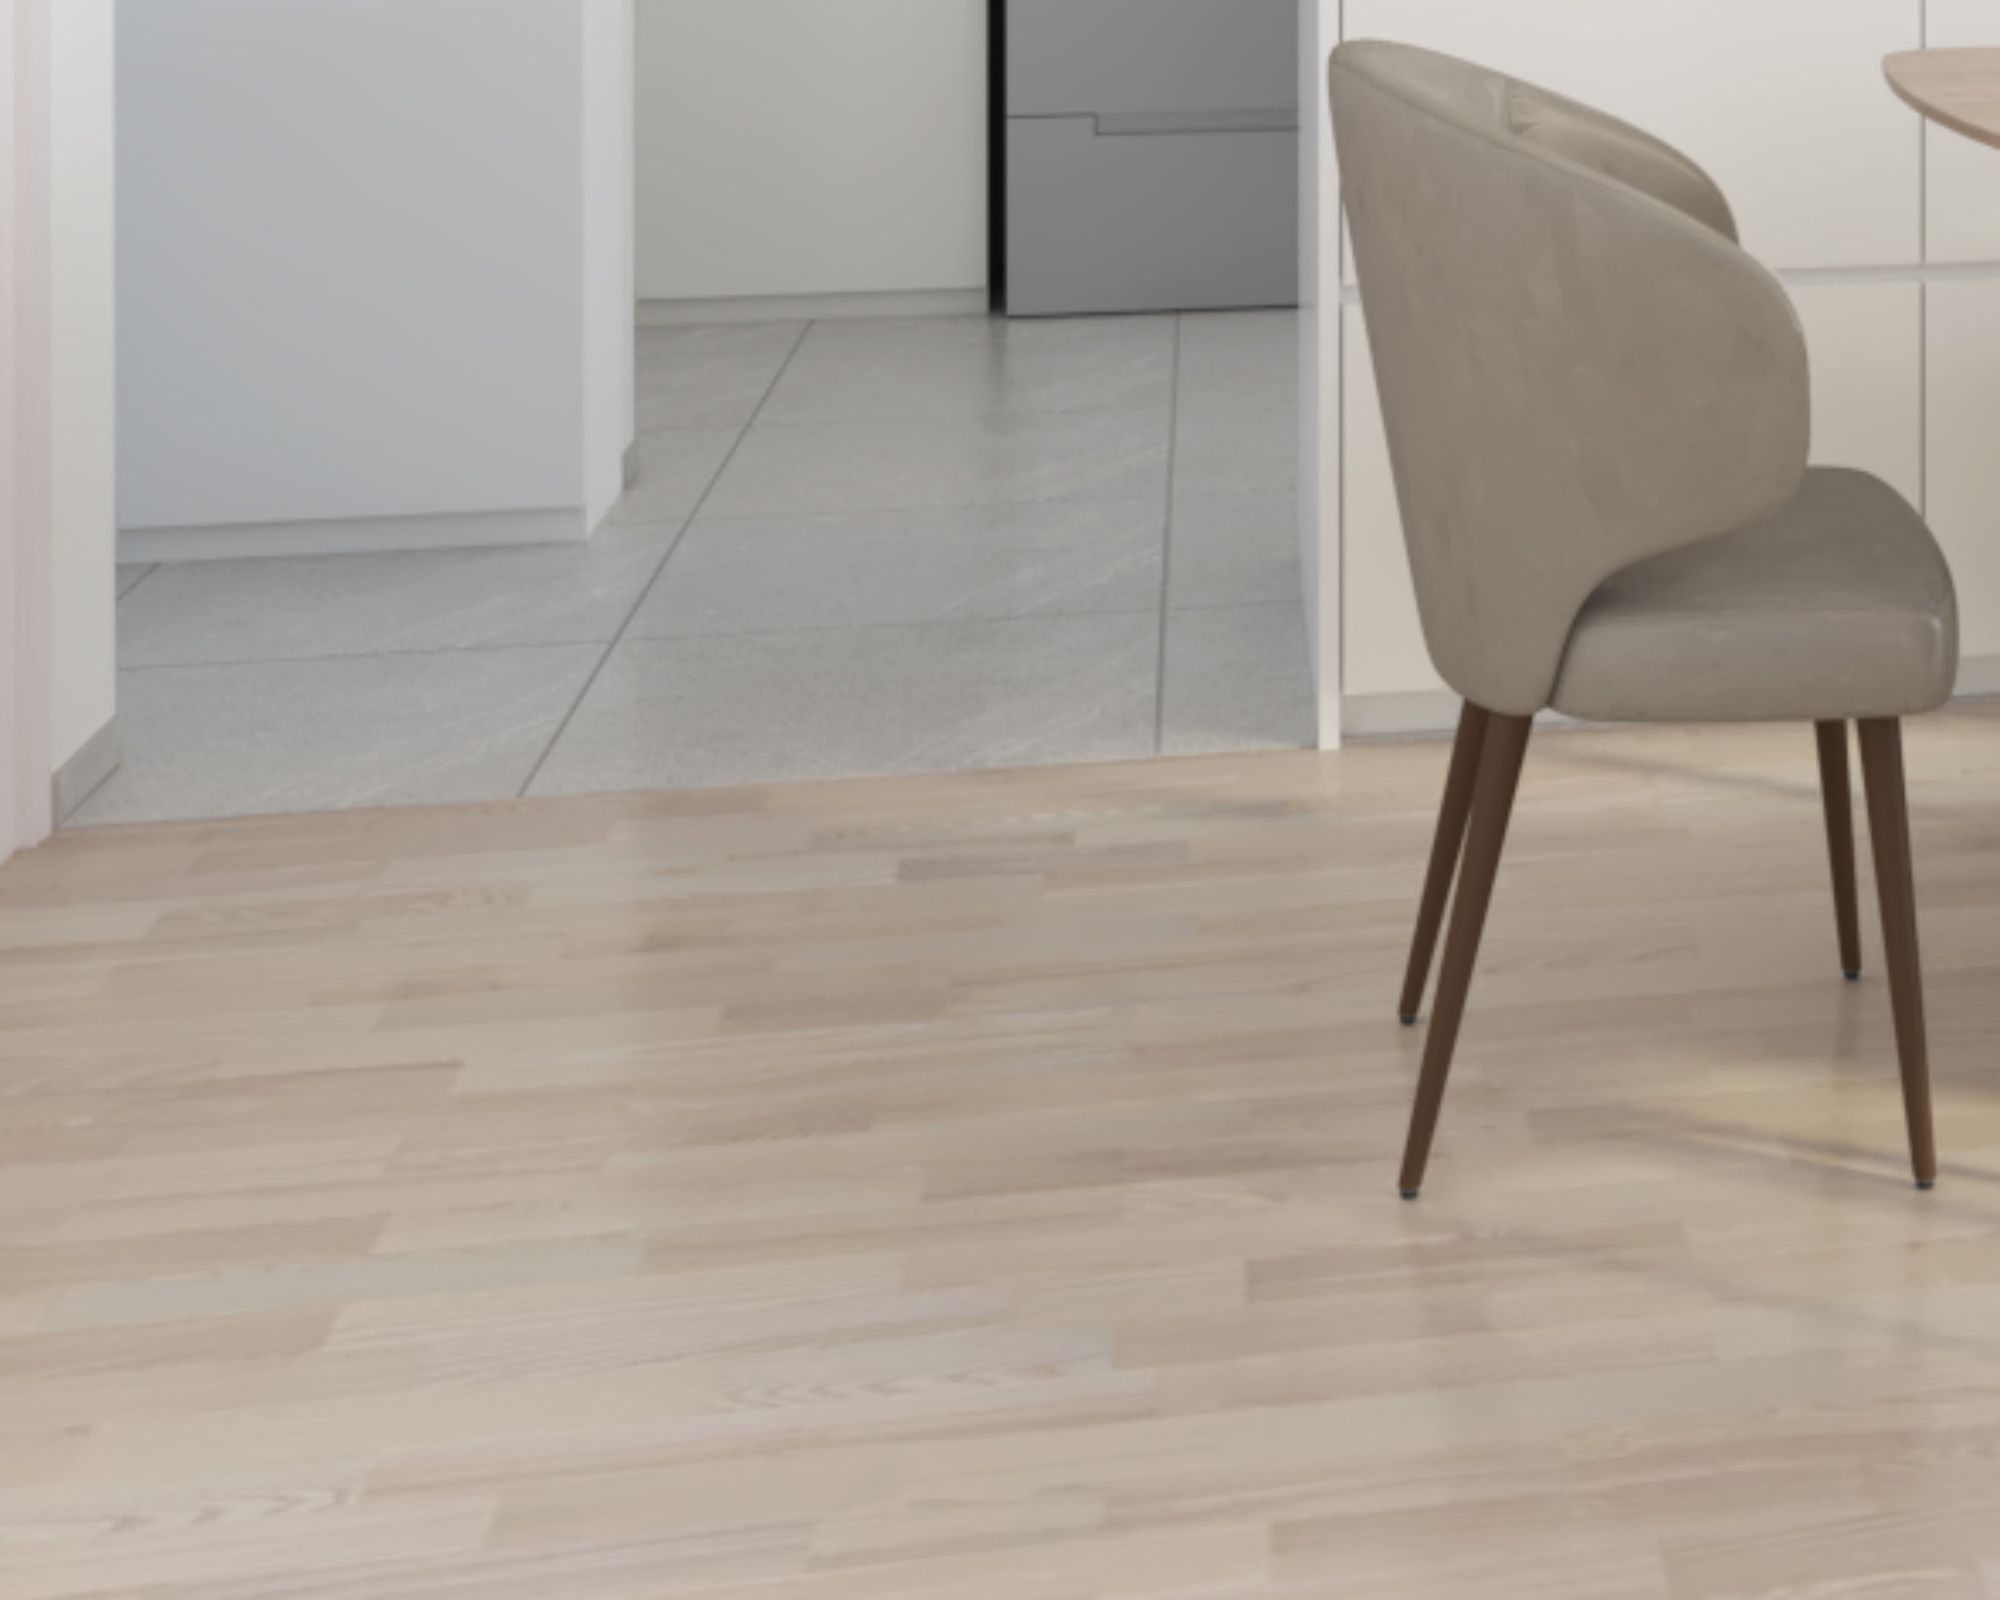 Modern Light Brown Flooring Design With A Matte Finish